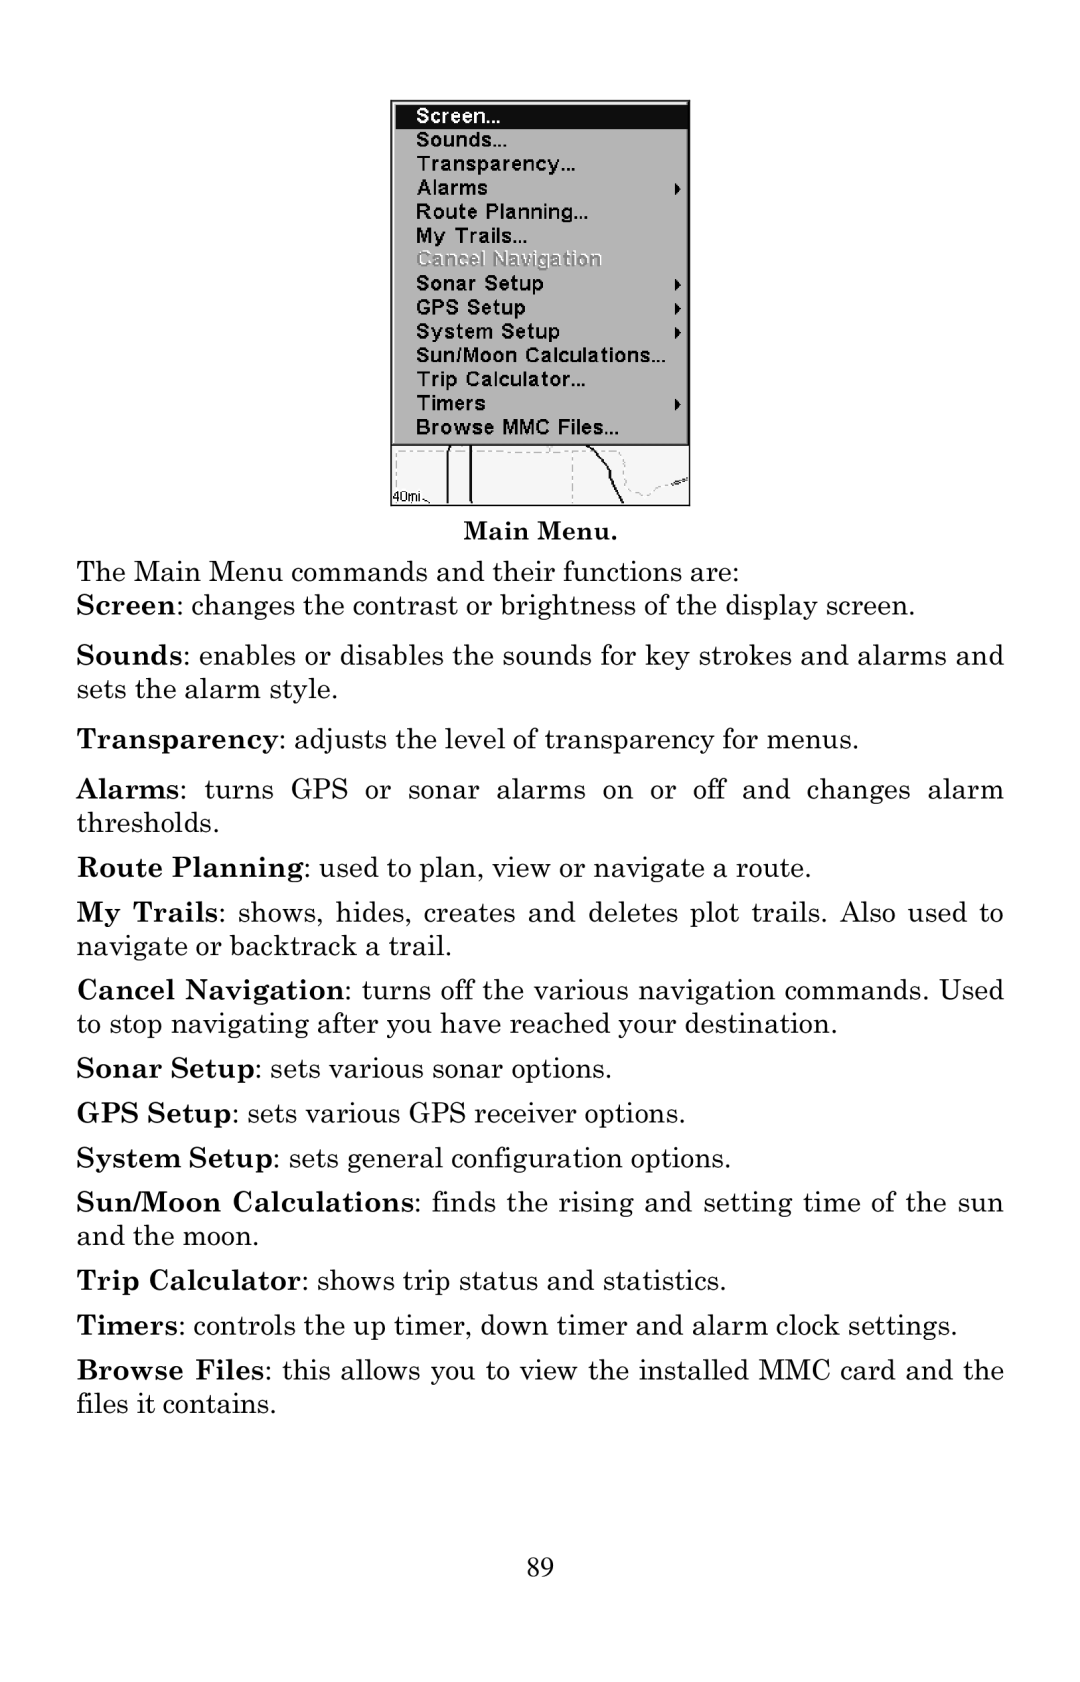 Eagle Electronics 640C, 640cDF manual Main Menu 